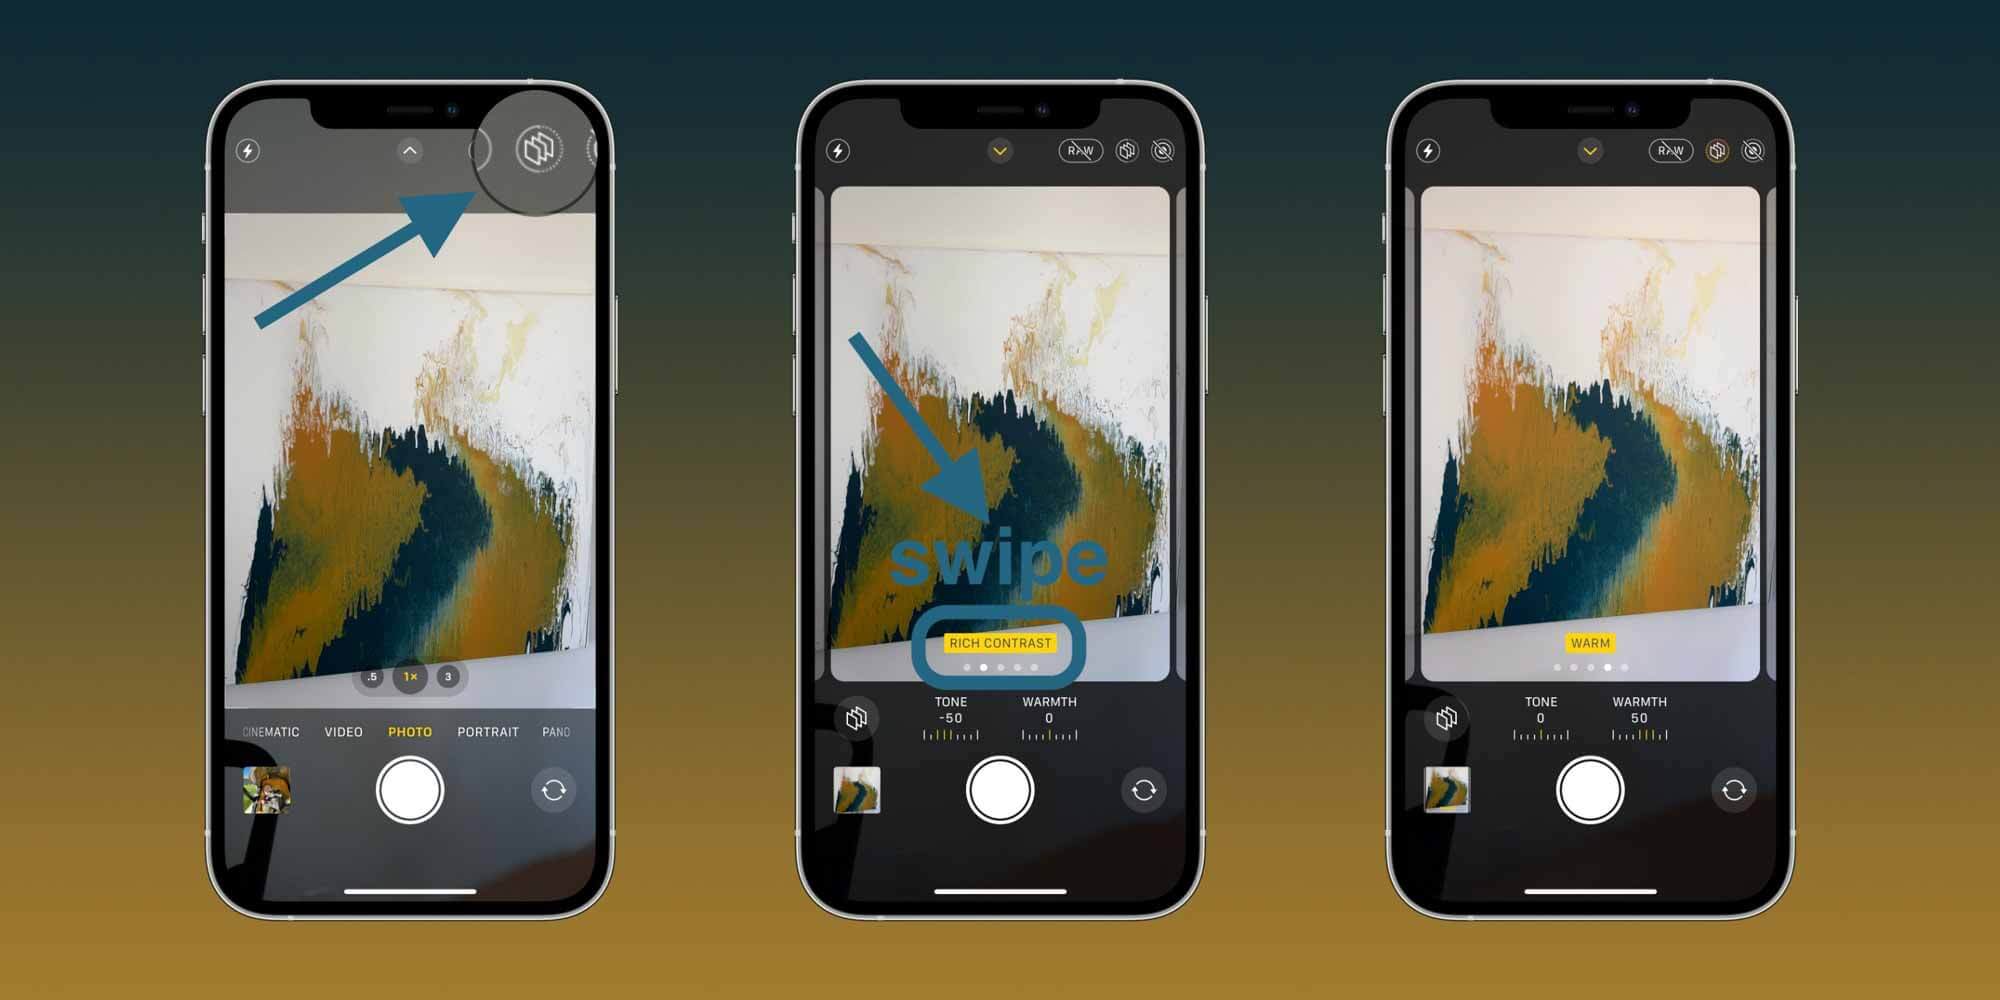 Как использовать пошаговое руководство по использованию фотографических стилей iPhone 13 — изменение в приложении 